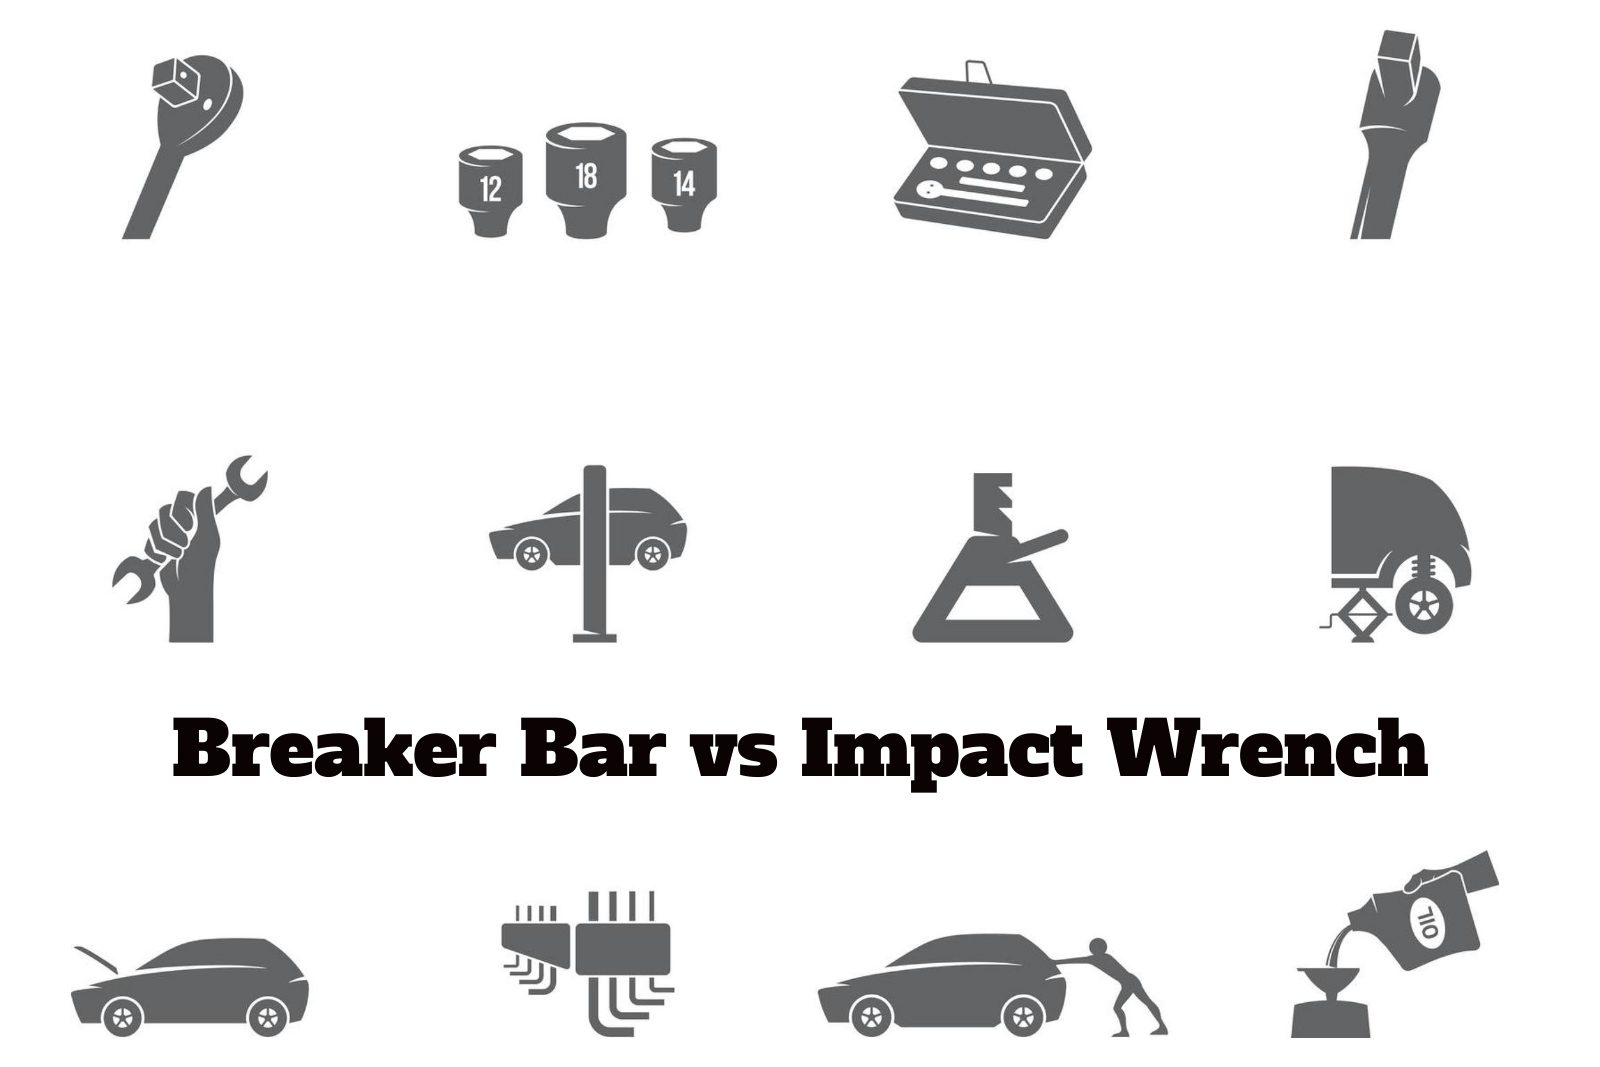 Breaker Bar vs Impact Wrench